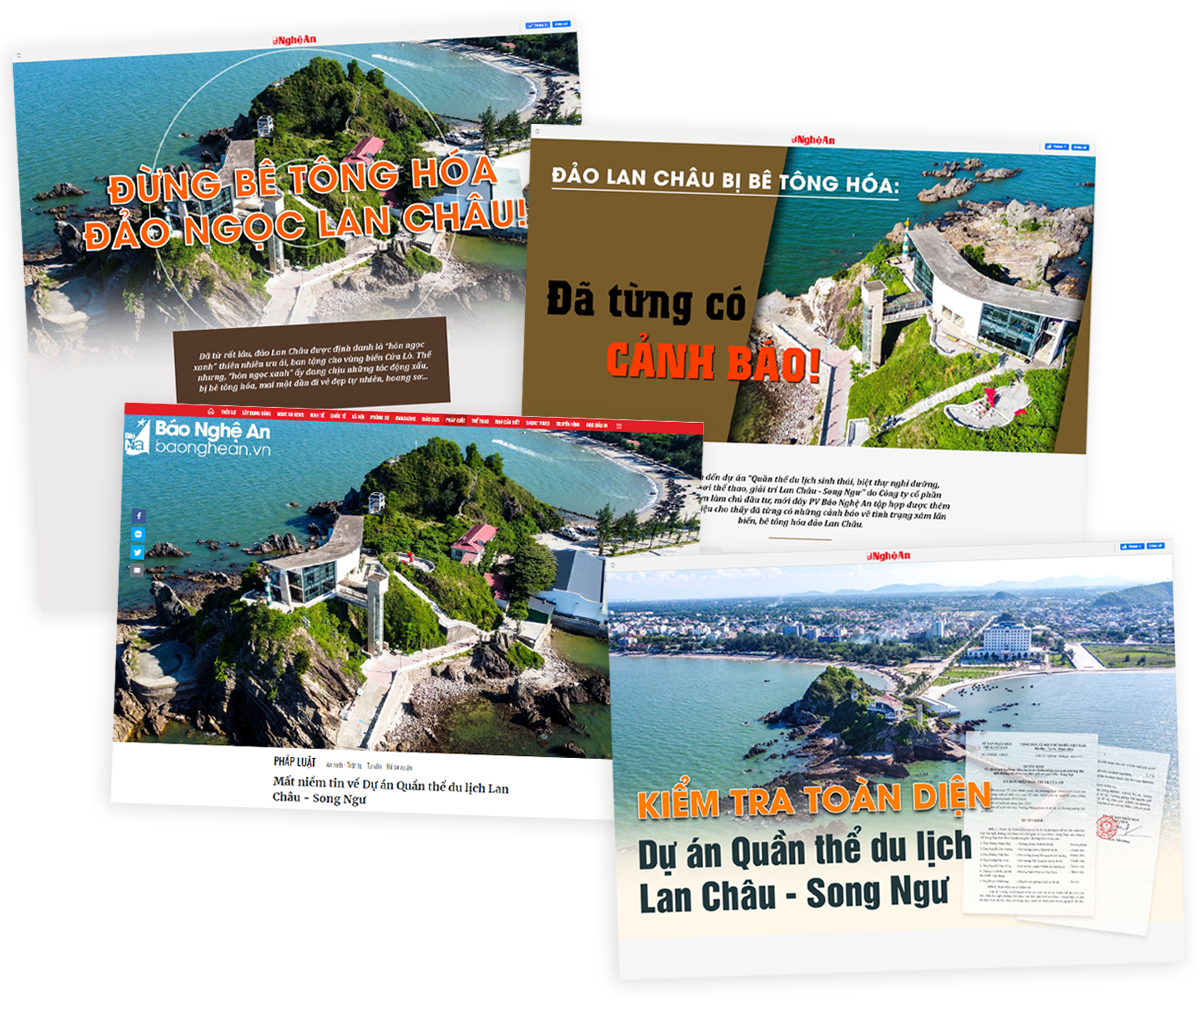 Bìa các bài viết liên quan dự án quần thể du lịch Lan Châu - Song Ngư trên Báo Nghệ An.